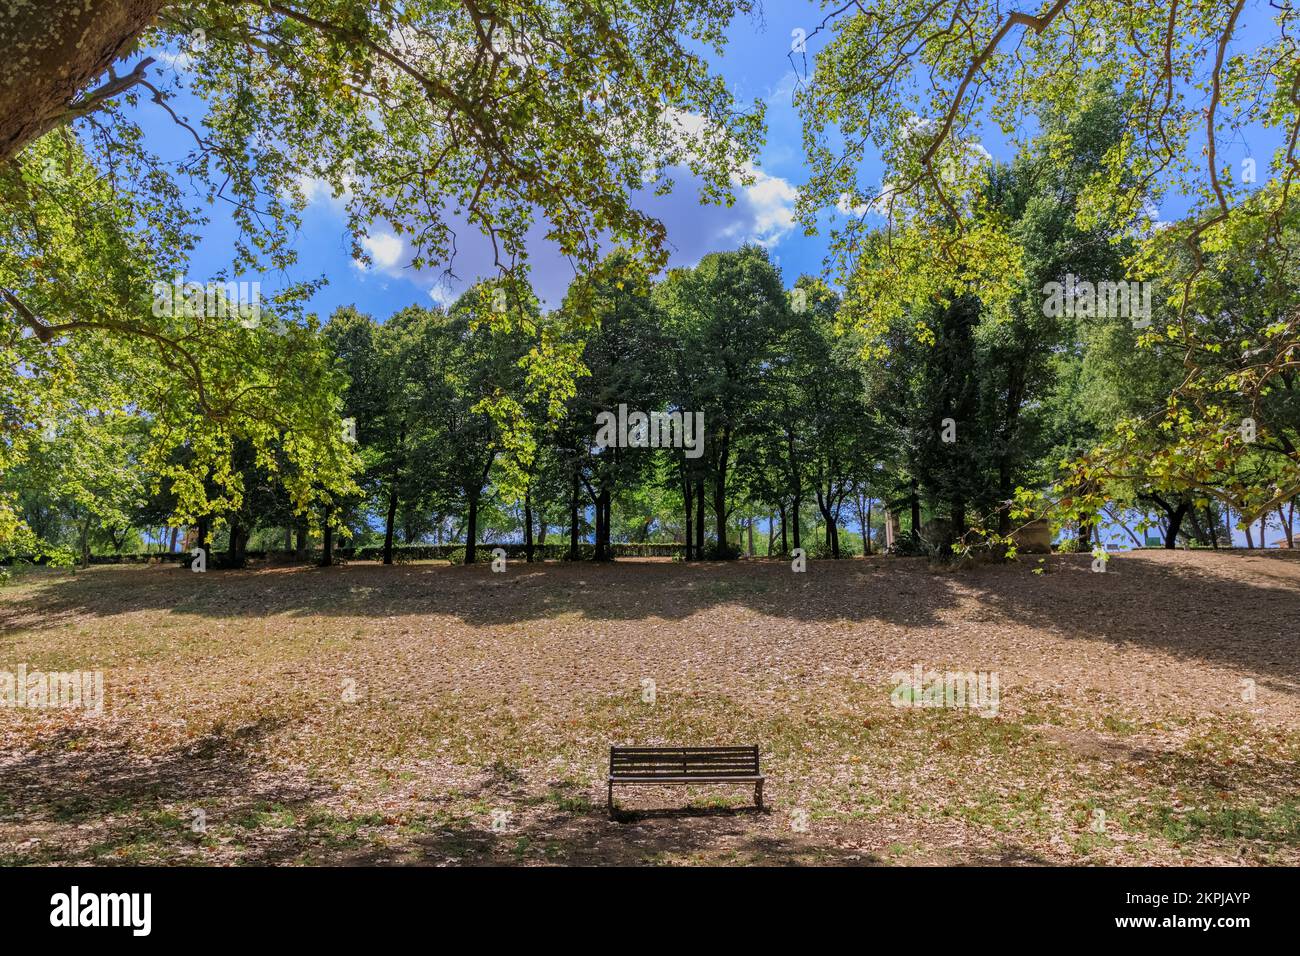 Giardino di Villa borghese a Roma: Panchina solitaria circondata da alberi. Foto Stock